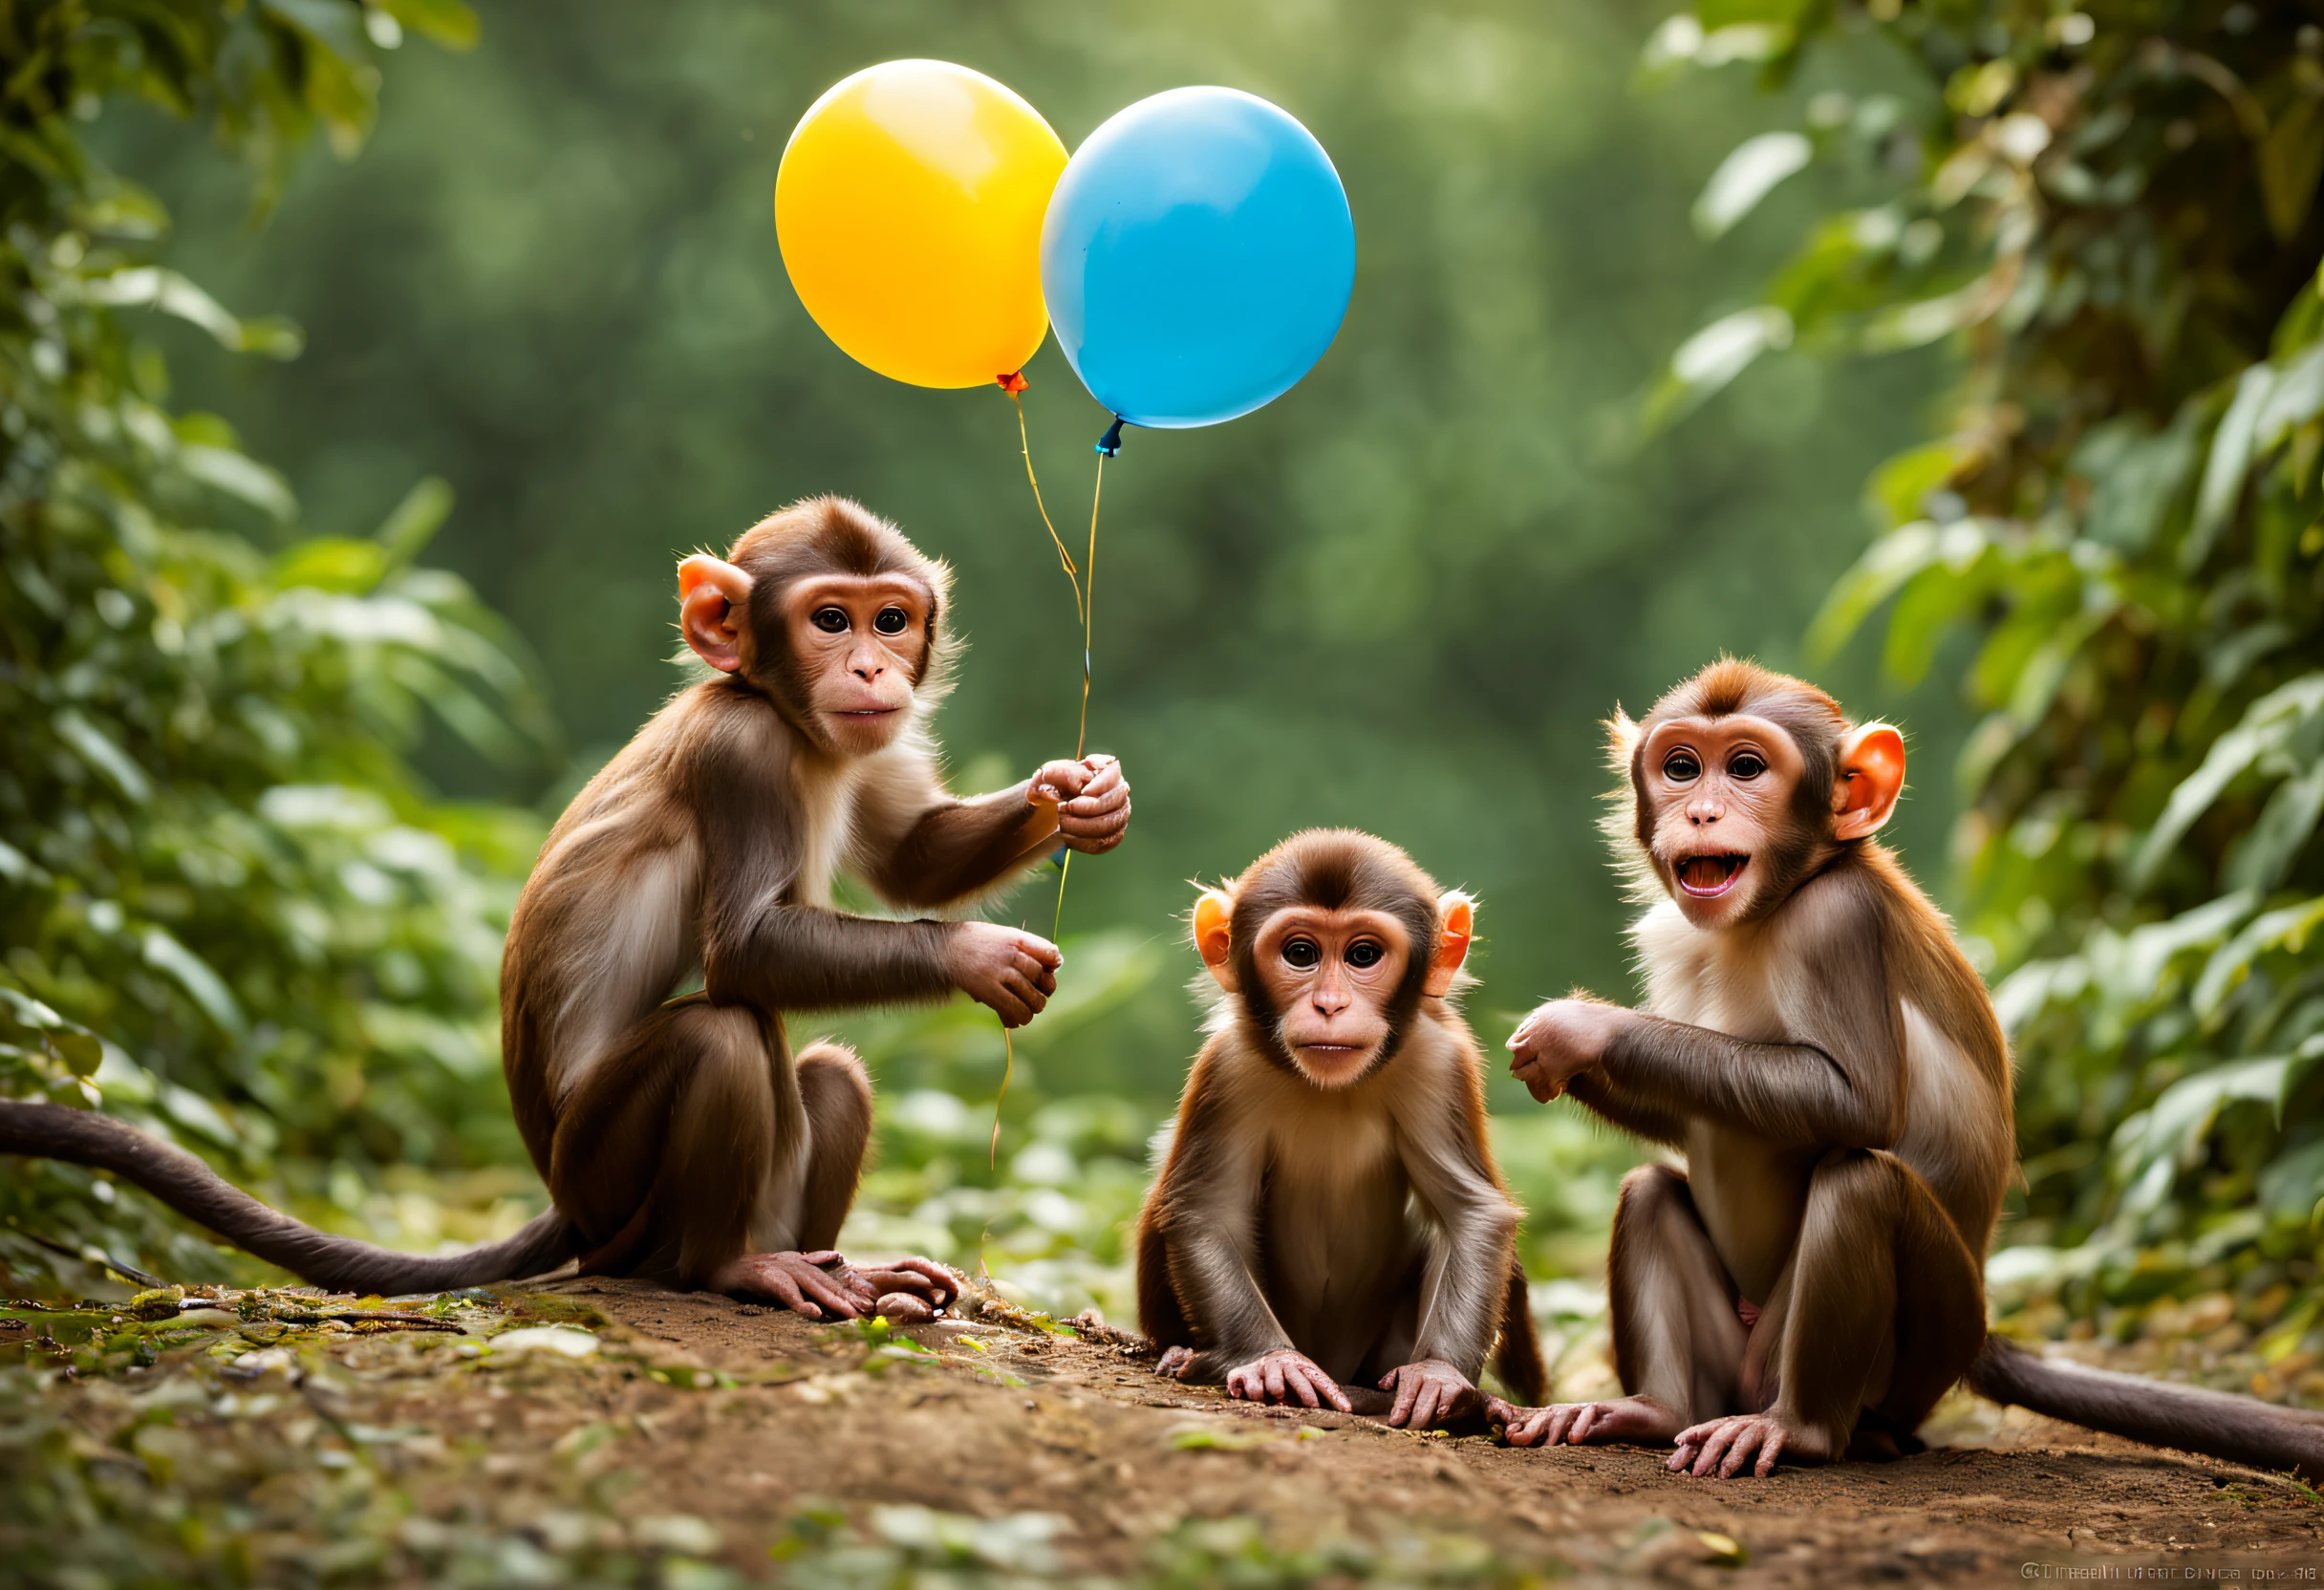 "(أفضل جودة,مفصلة للغاية),مجموعة من القرود تلعب بالبالونات,هزار,مرح,القرود الفضولية,القرود النشطة,القرود لعوب,خلفية الغابة,بالونات ملونة,جو مبهج,الوان براقة,وجوه معبرة,الفراء رقيق,تعبيرات مؤذية,تصرفات القرد الغريبة,لحظات سعيدة,الموطن الطبيعي للقرد,تصوير الحياة البرية,لقطات العمل,عائلة القرد,الأخوة القرد,العواطف,اللعب التفاعلي,الإثارة,سلوك الحيوان,مشهد مبهج,أضواء خوخه,طبيعة جميلة,الأشجار المورقة,غابة مضاءة بنور الشمس,وقت اللعب,التخيلات النشطة,هزار-filled environment,ردود فعل إيجابية,حركة,القرود القفز,فرقعة البالون,الأذى,أعمال مشبوهة,اللعب الخيالي,البراءة,laughter and مرح"